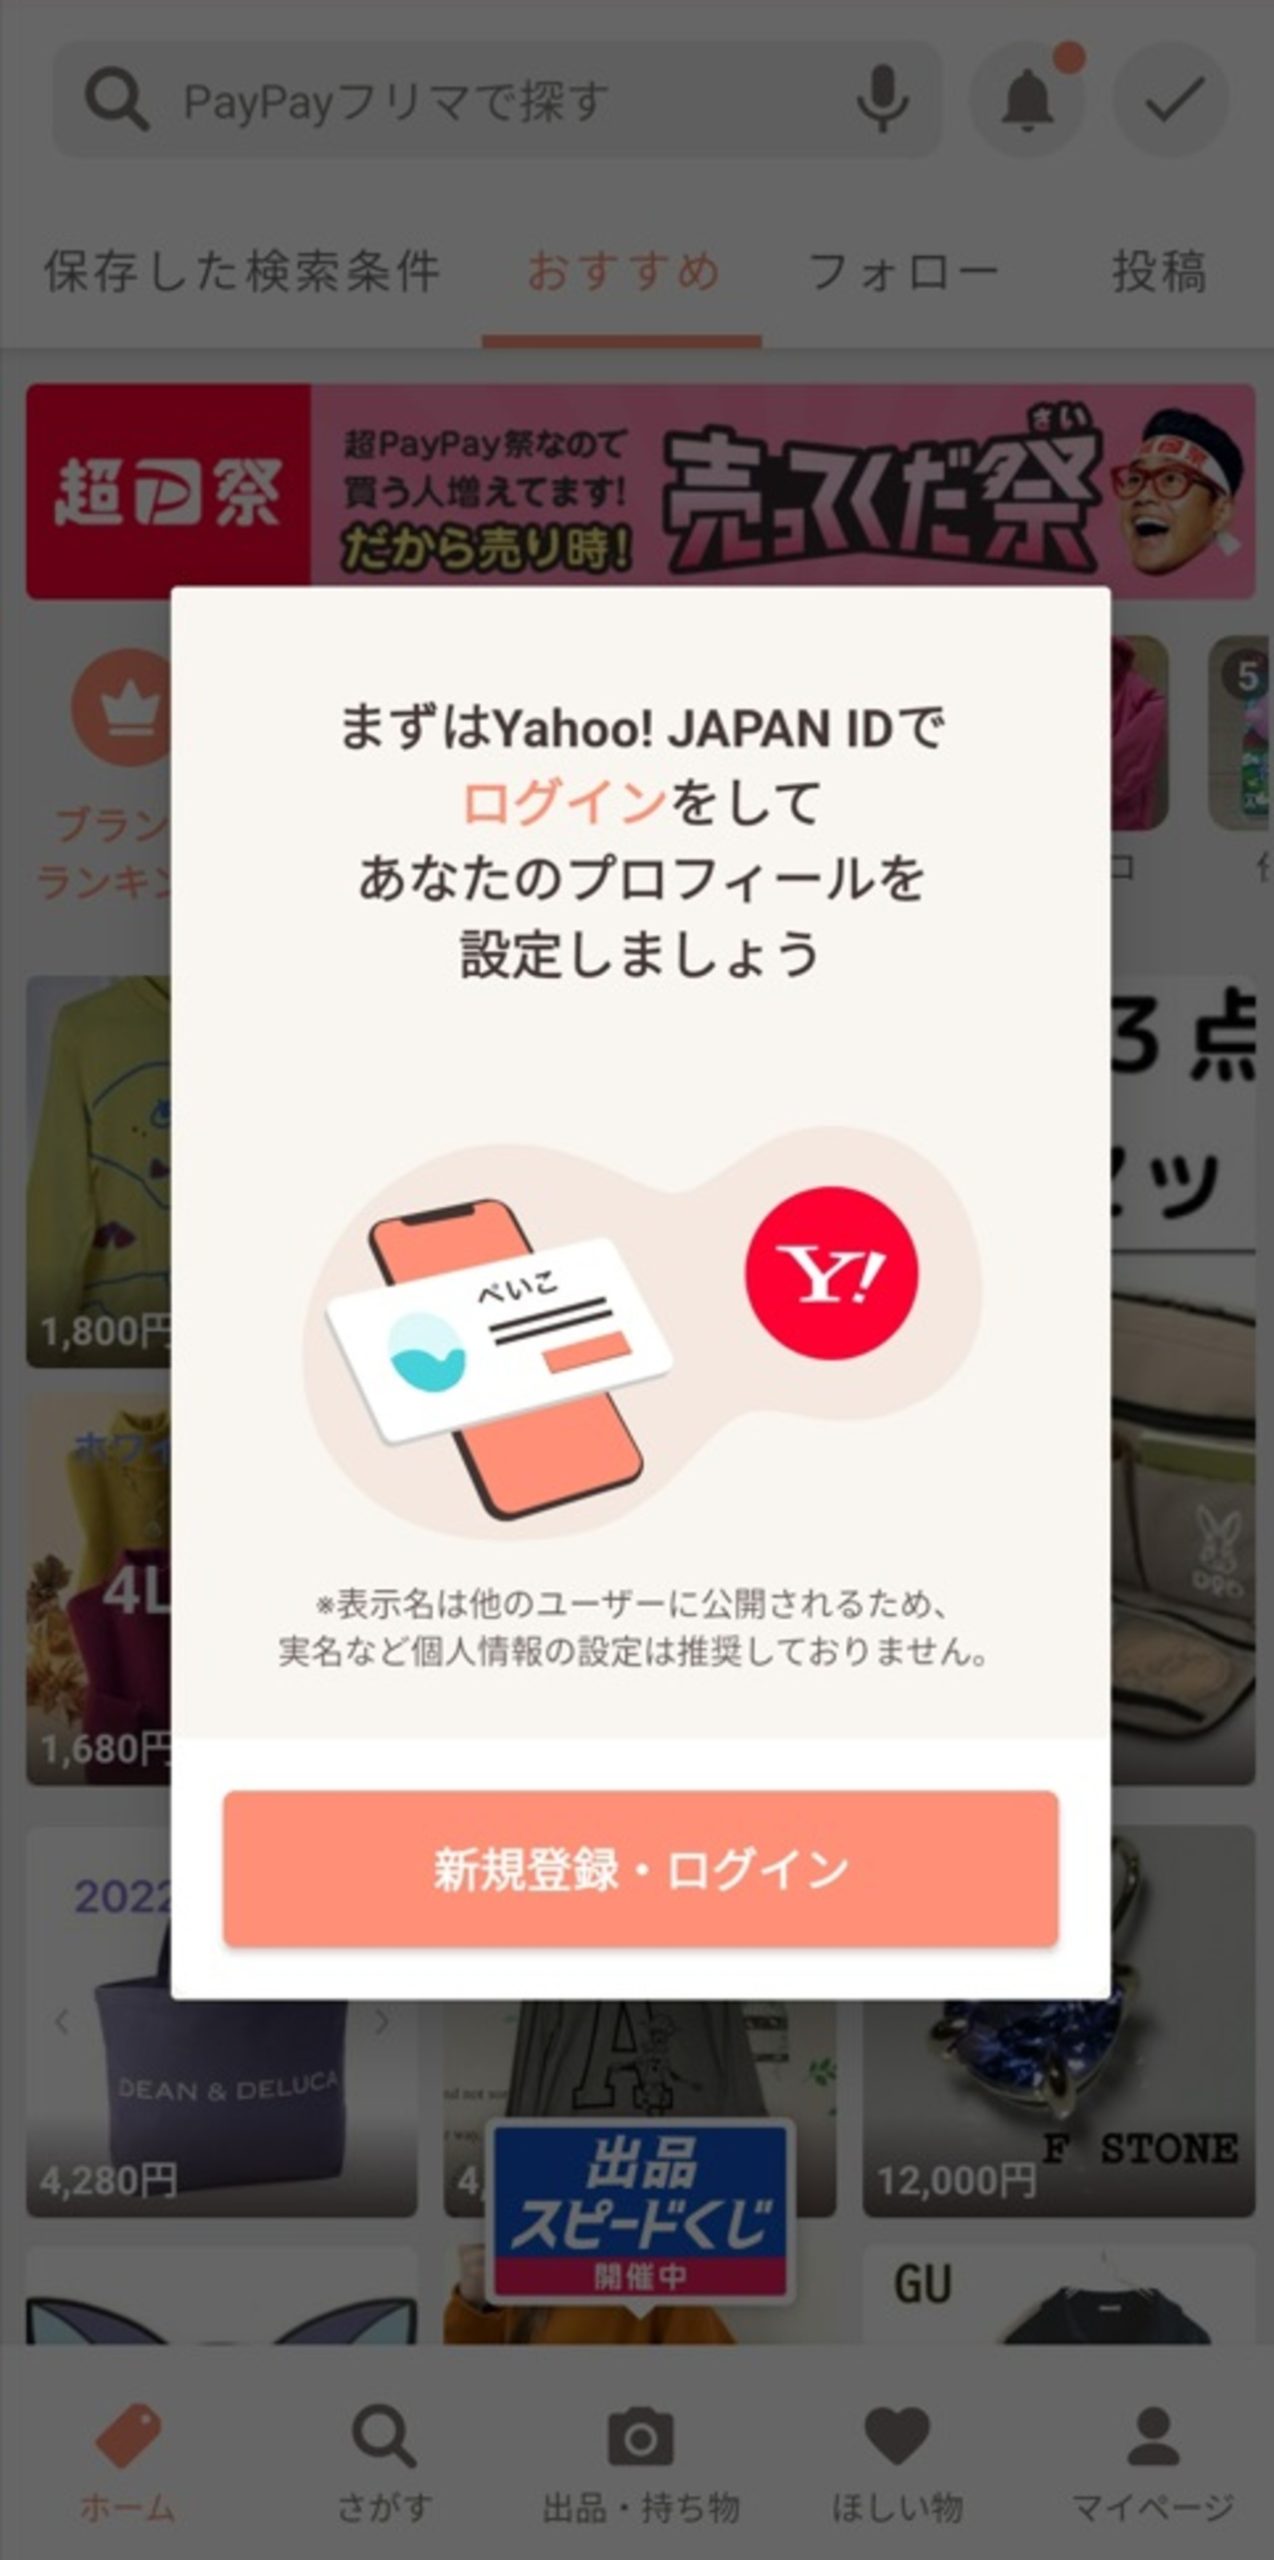 PayPayフリマの支払うための登録手順_アプリのダウンロード・Yahoo！JAPAN IDと連携